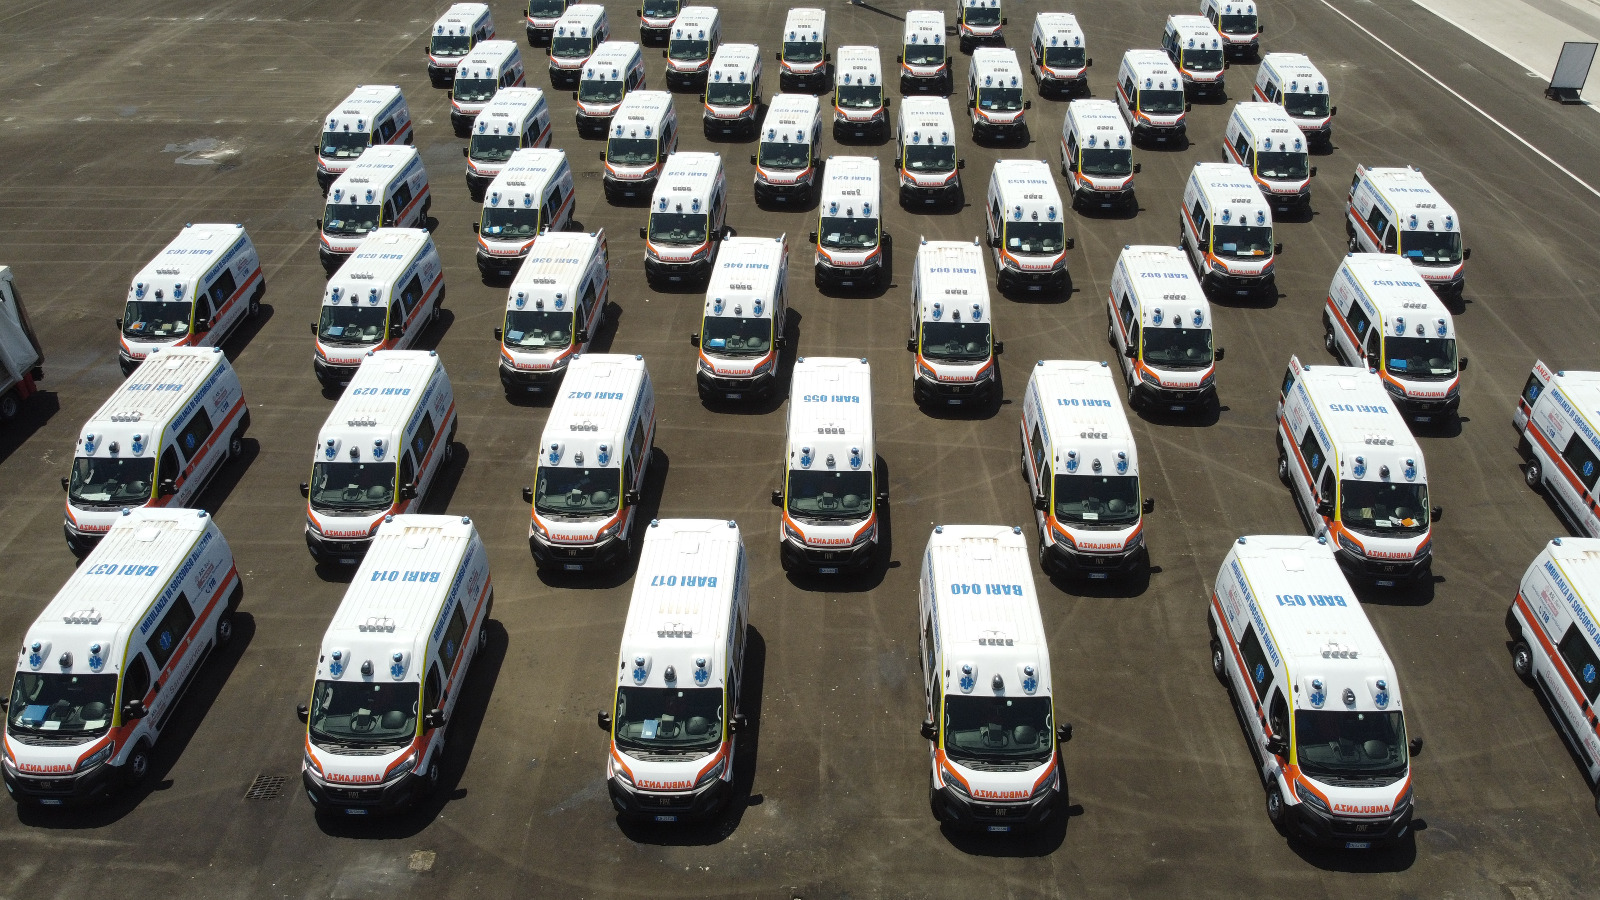 Galleria Il 118 ASL Bari cambia volto: ecco 55 nuove ambulanze  e 462 operatori assunti a tempo indeterminato in Sanitaservice - Diapositiva 21 di 21